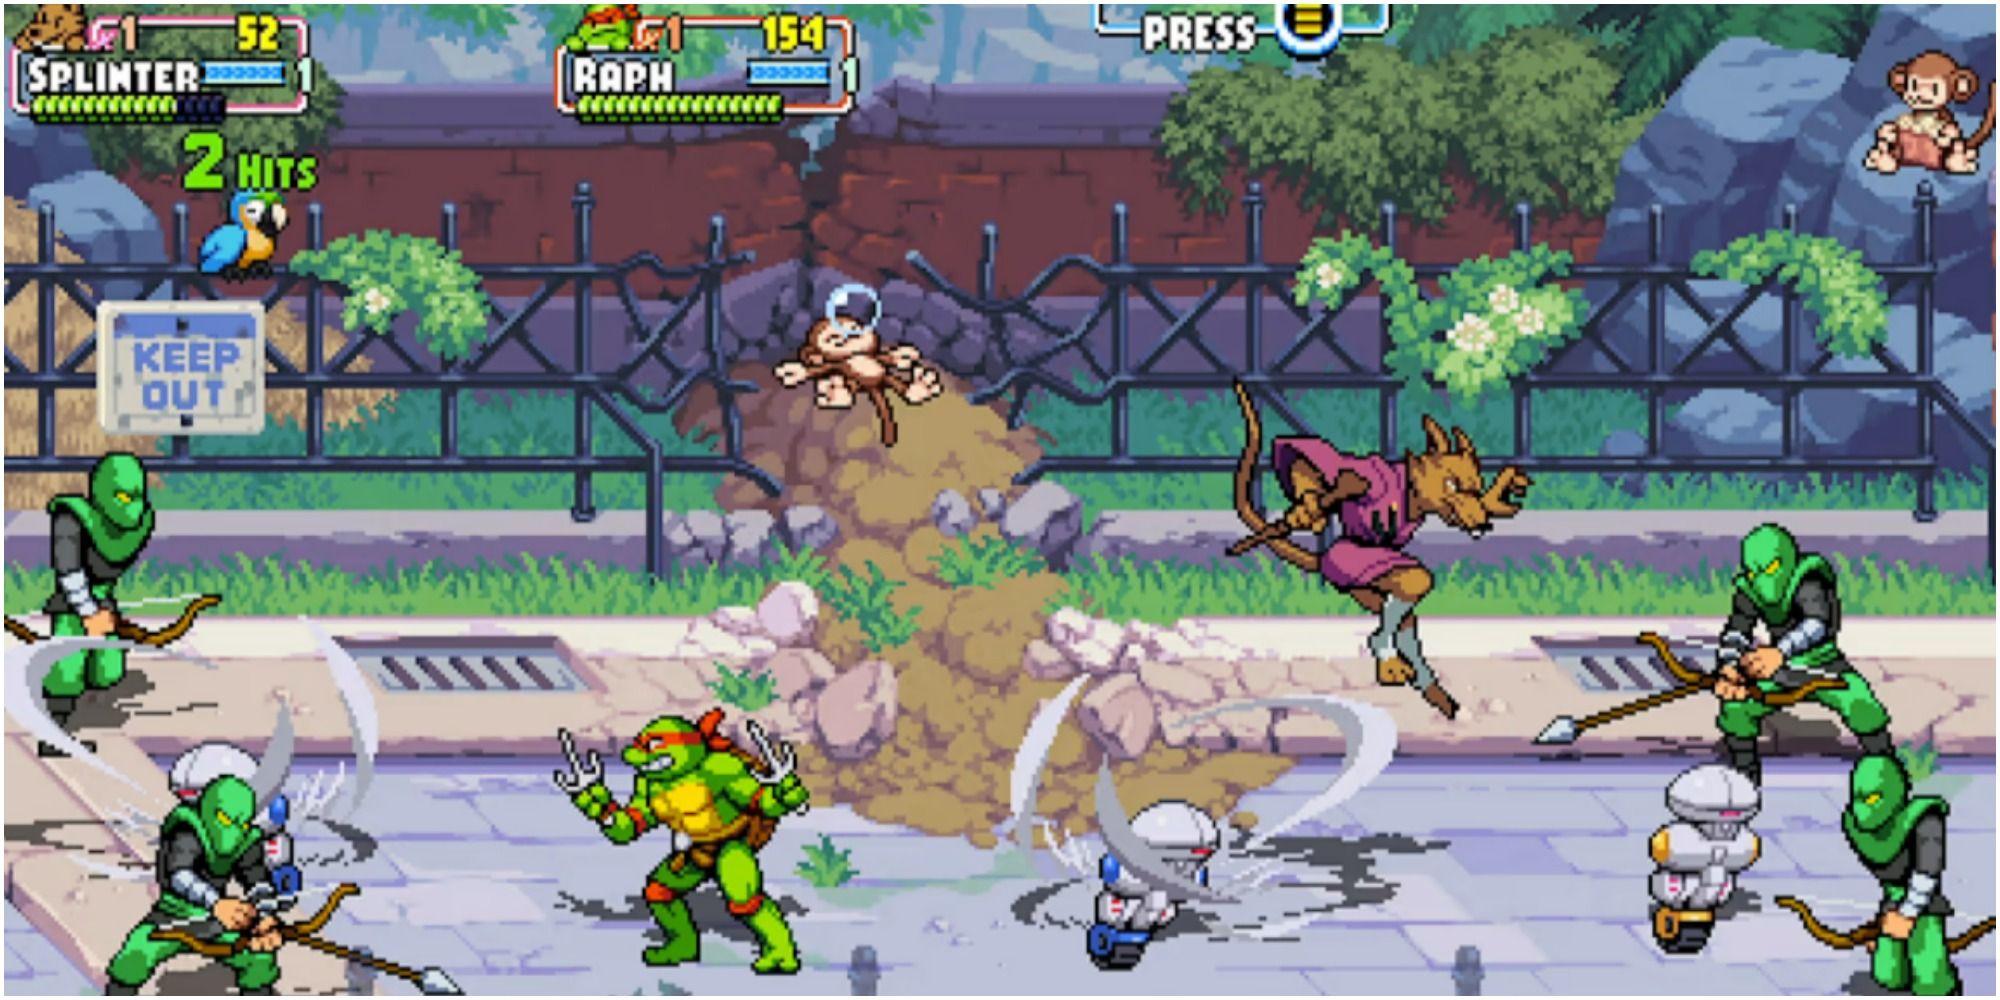 tmnt shredder's revenge characters battling enemies in the zoo stage